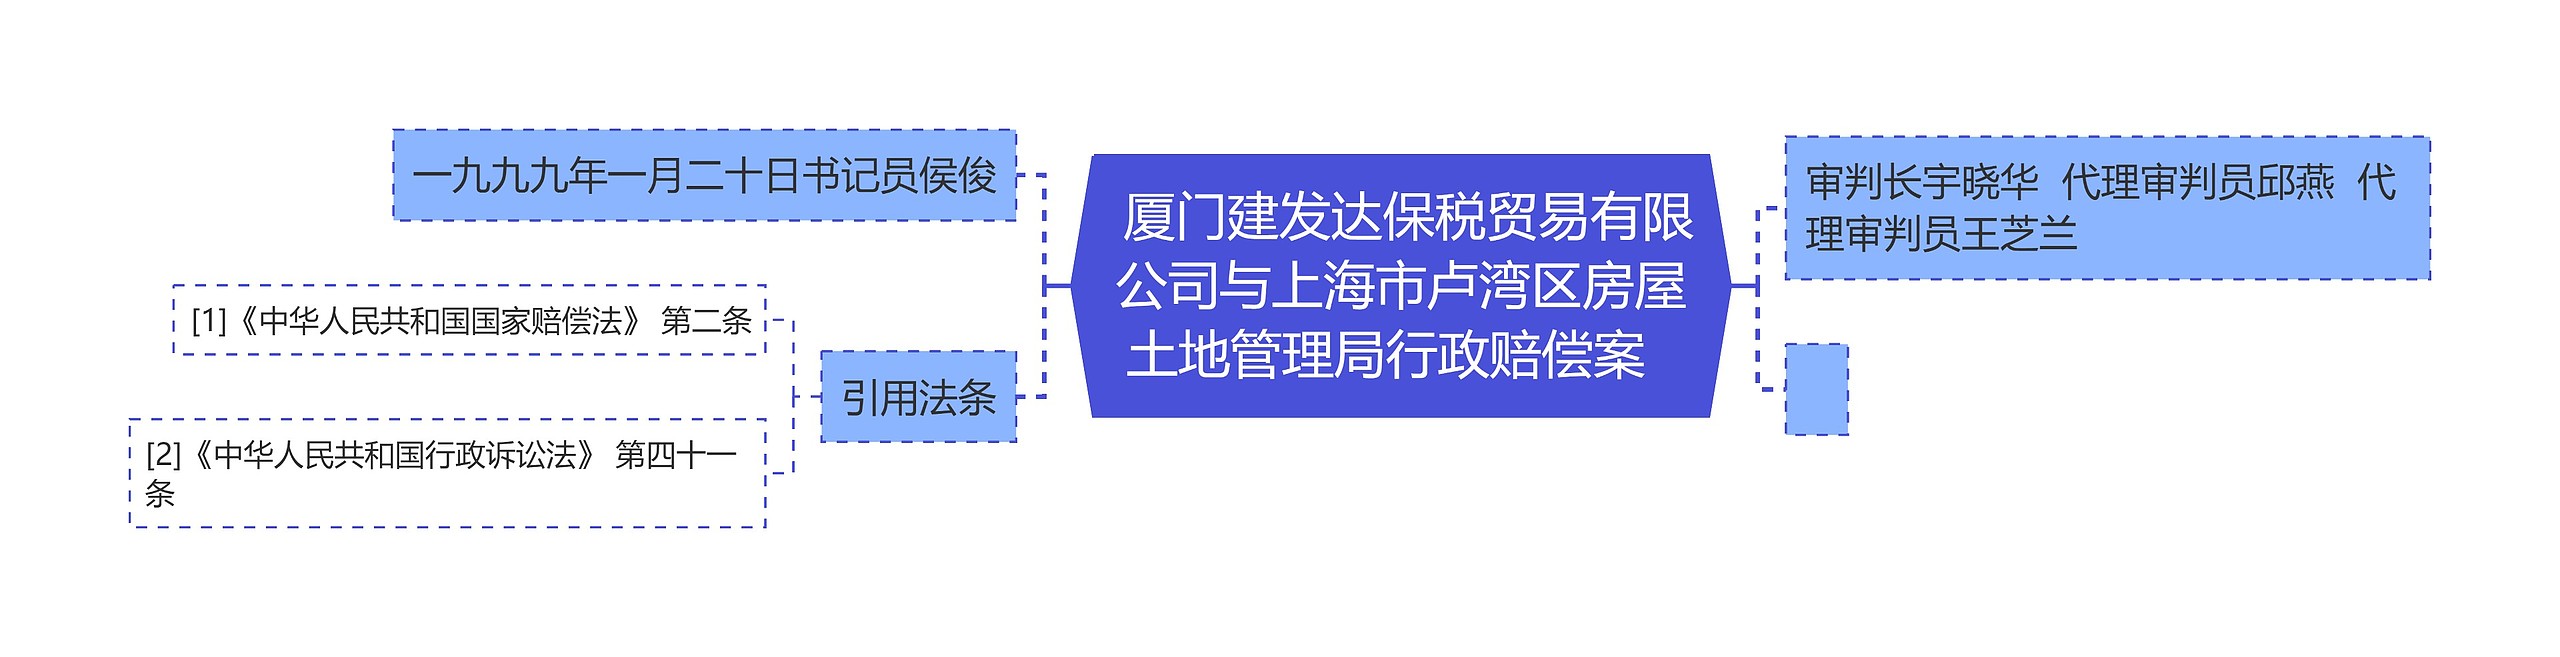  厦门建发达保税贸易有限公司与上海市卢湾区房屋土地管理局行政赔偿案  